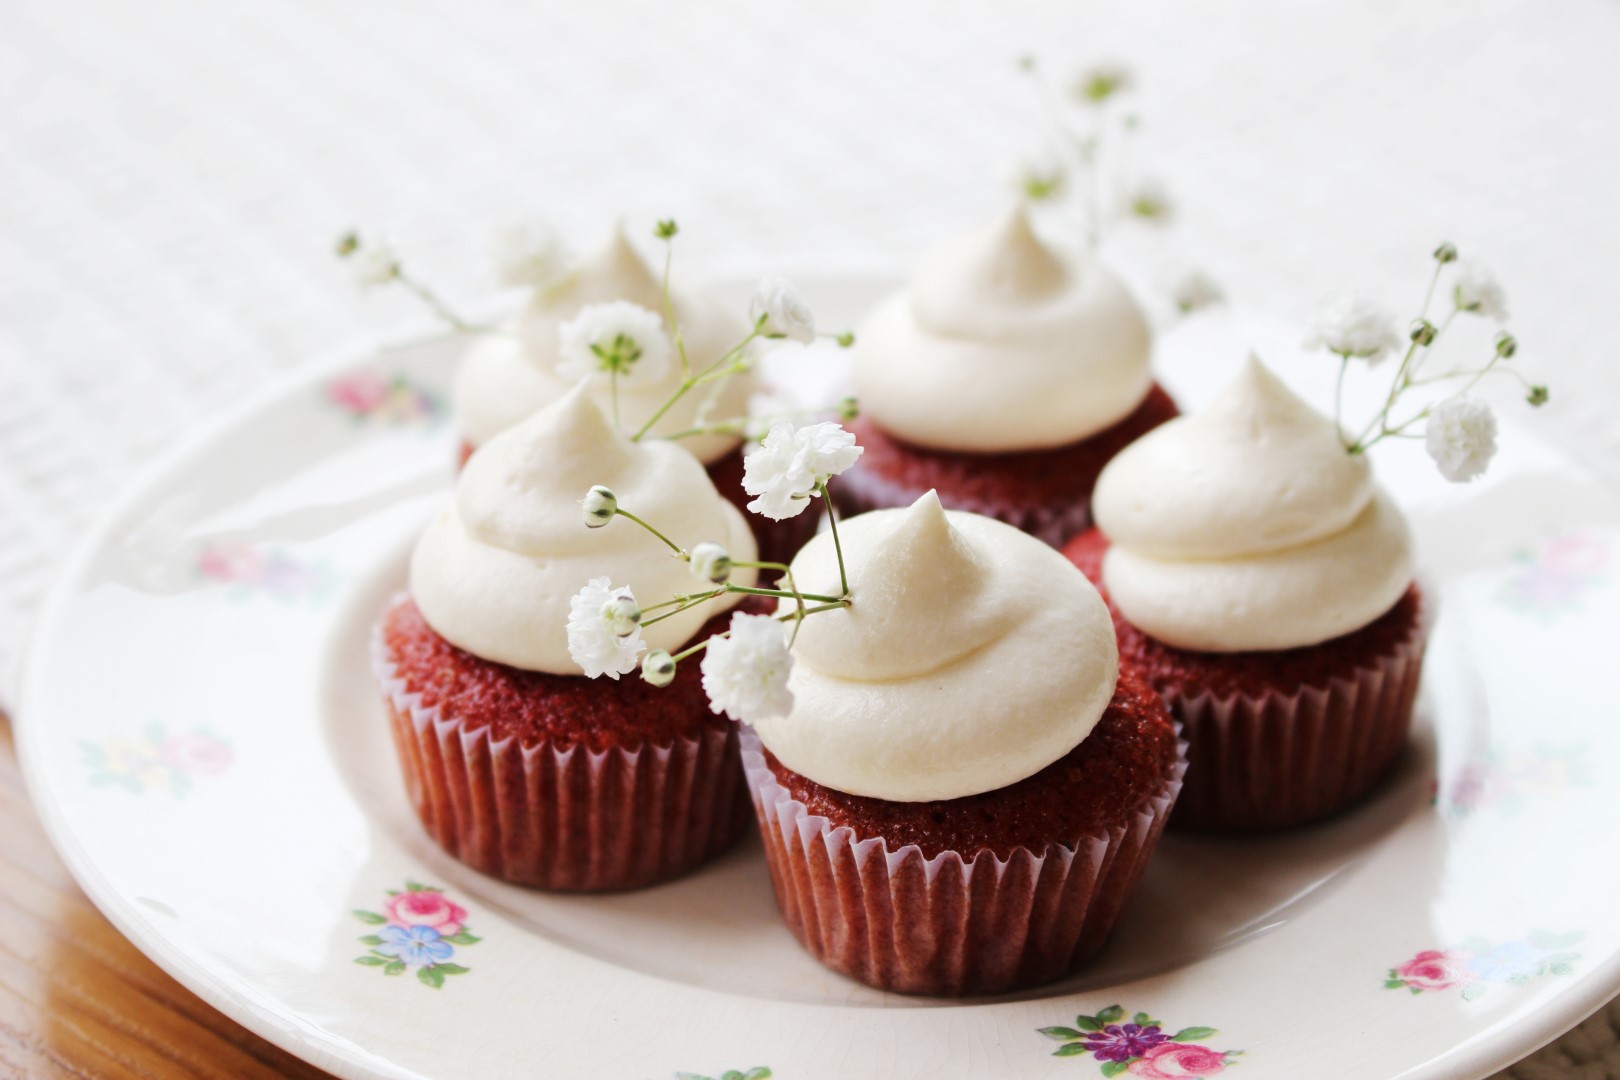 cupcakes red velvet, receta fácil, receta de cocina.